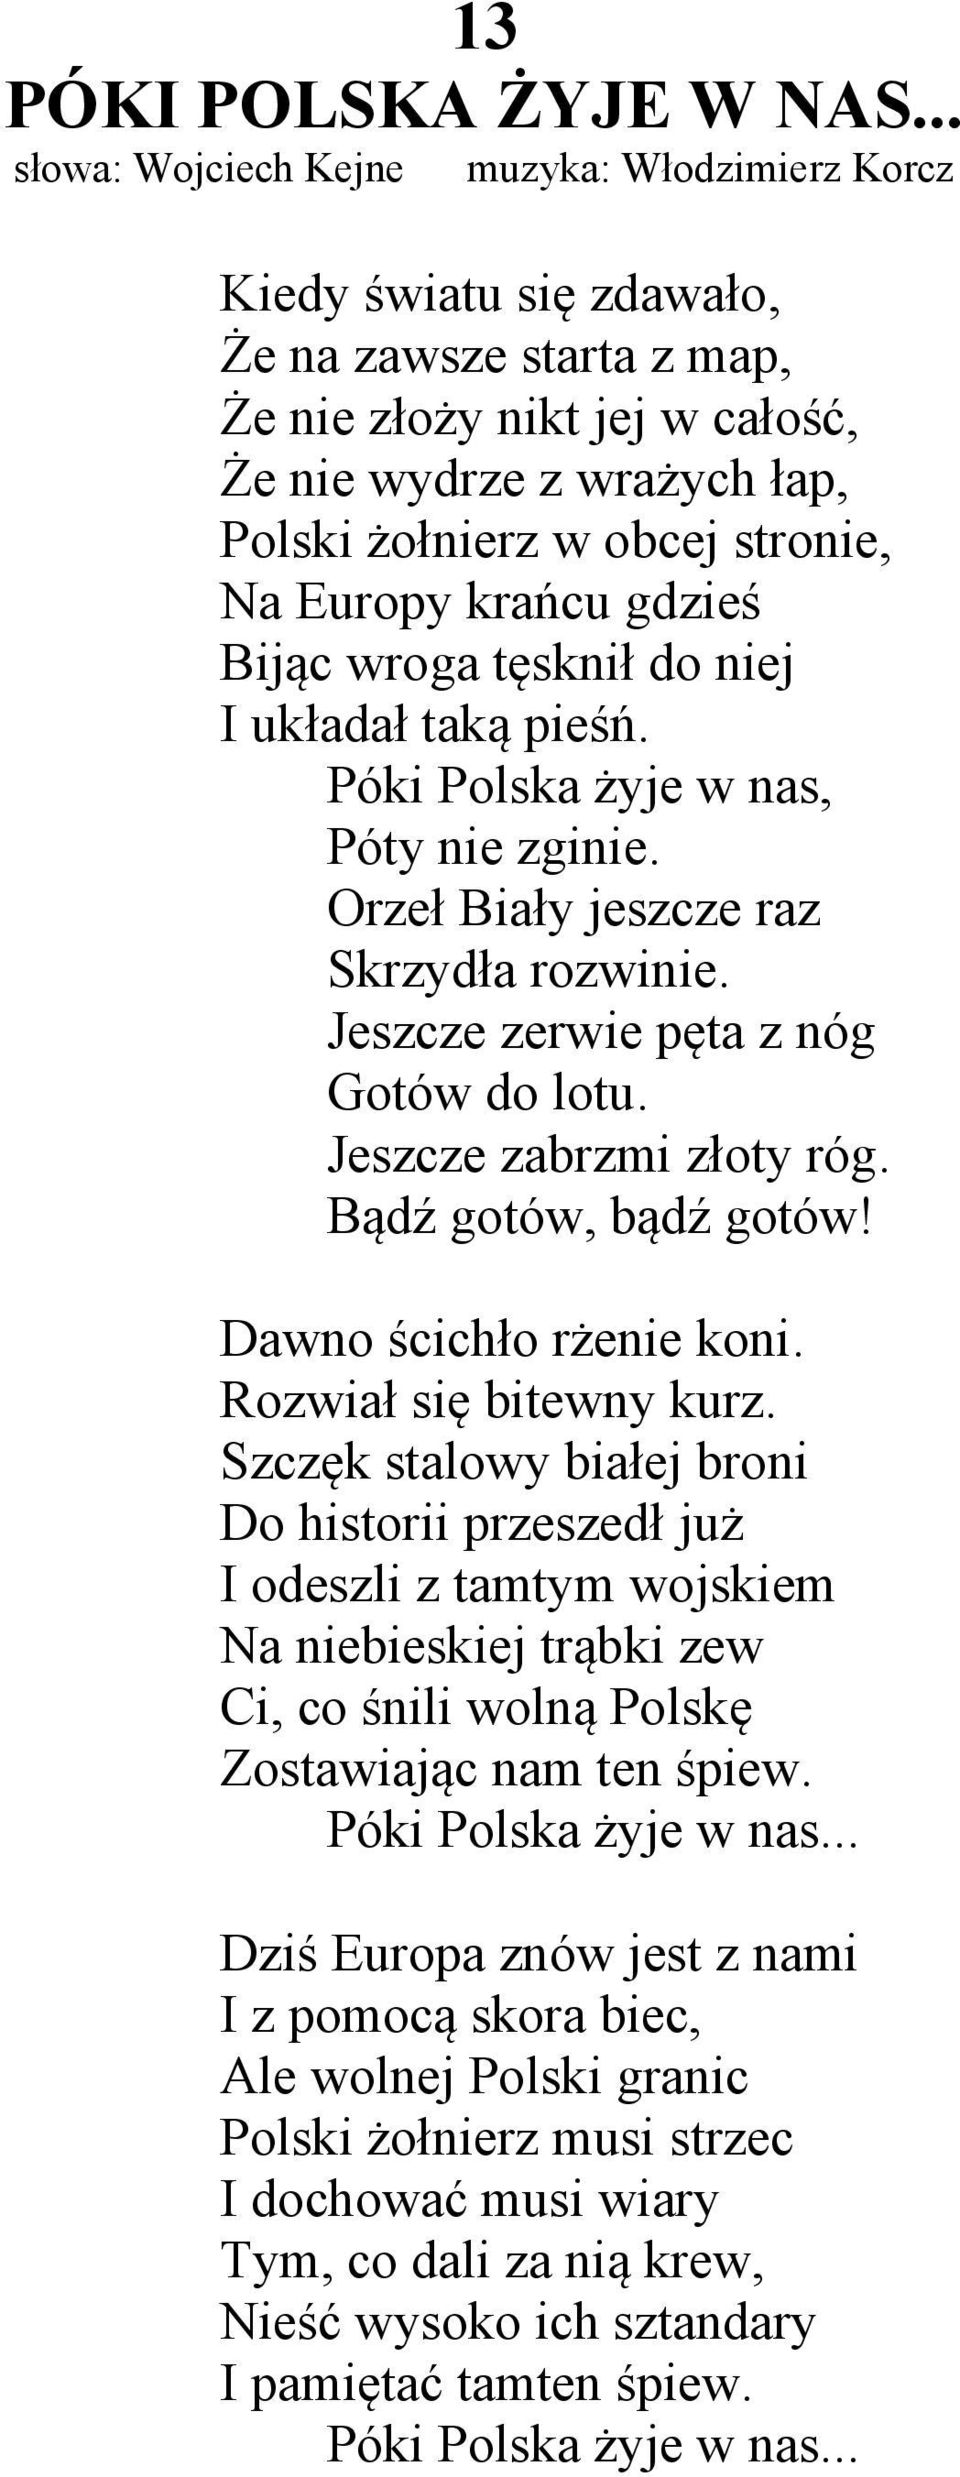 1 Sliczna Gwiazdo Slowa Jerzy Masior Muzyka Aleksander Porzucek Pdf Free Download